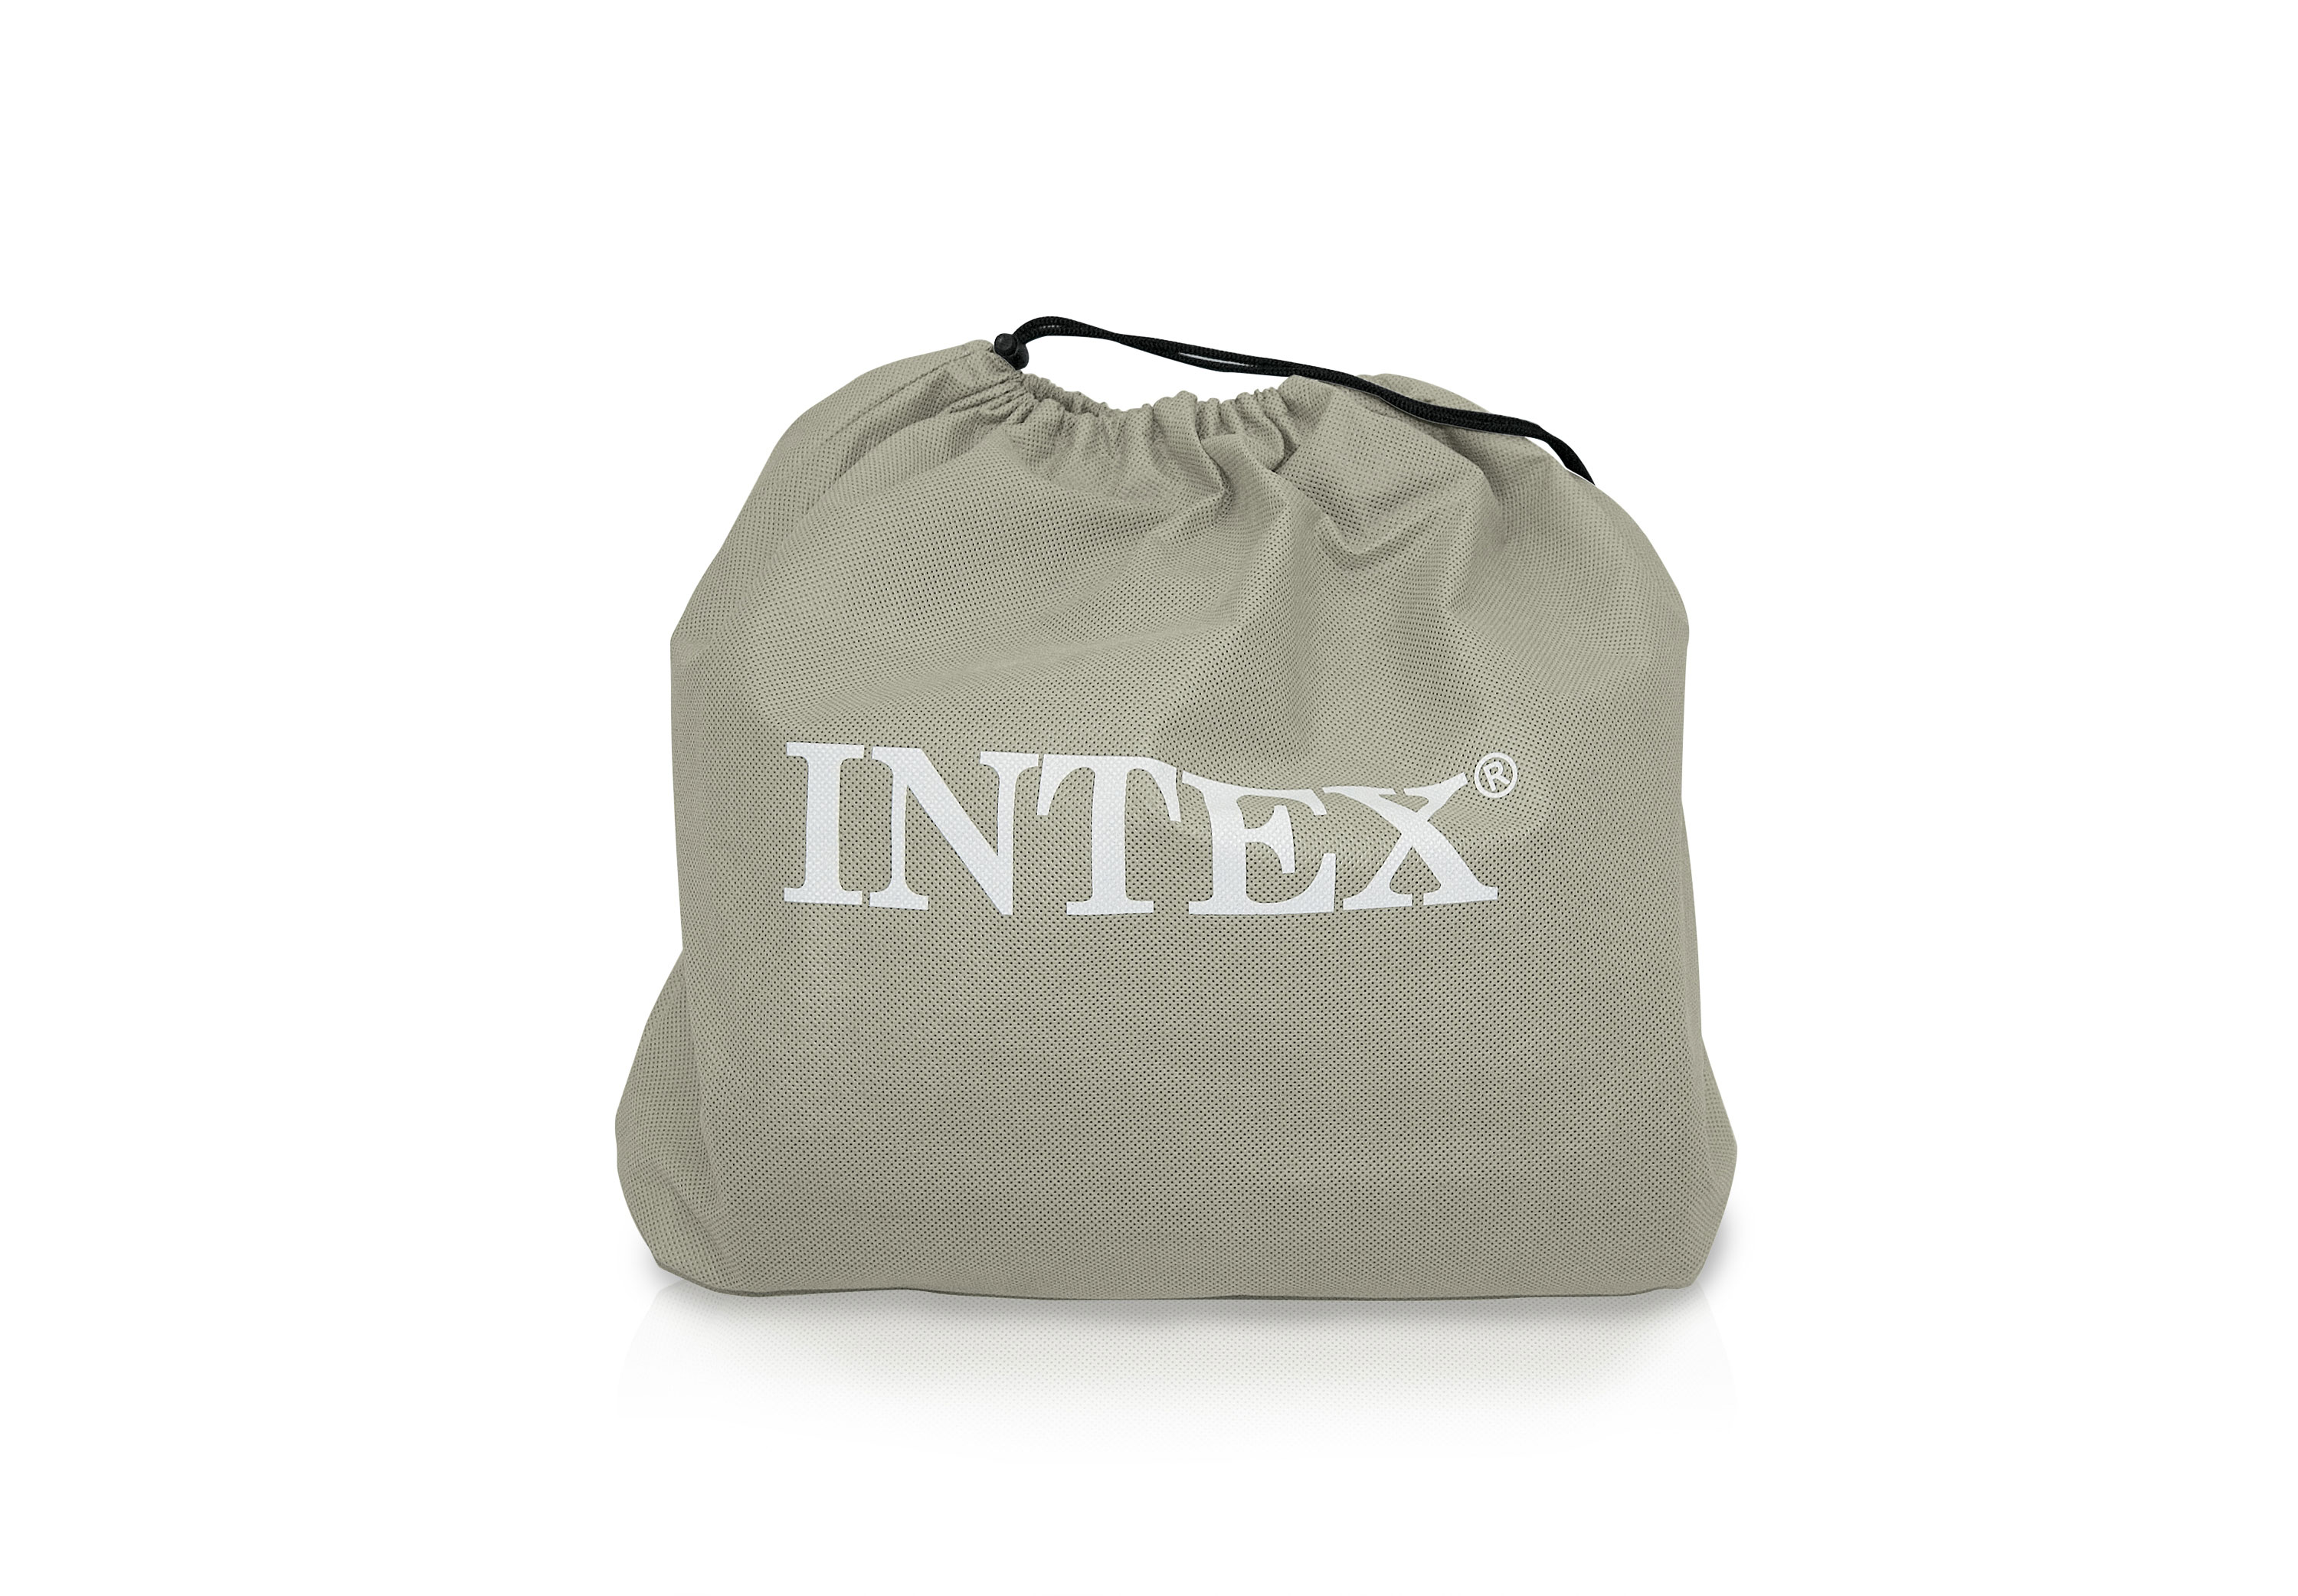 intex raised twin air mattress